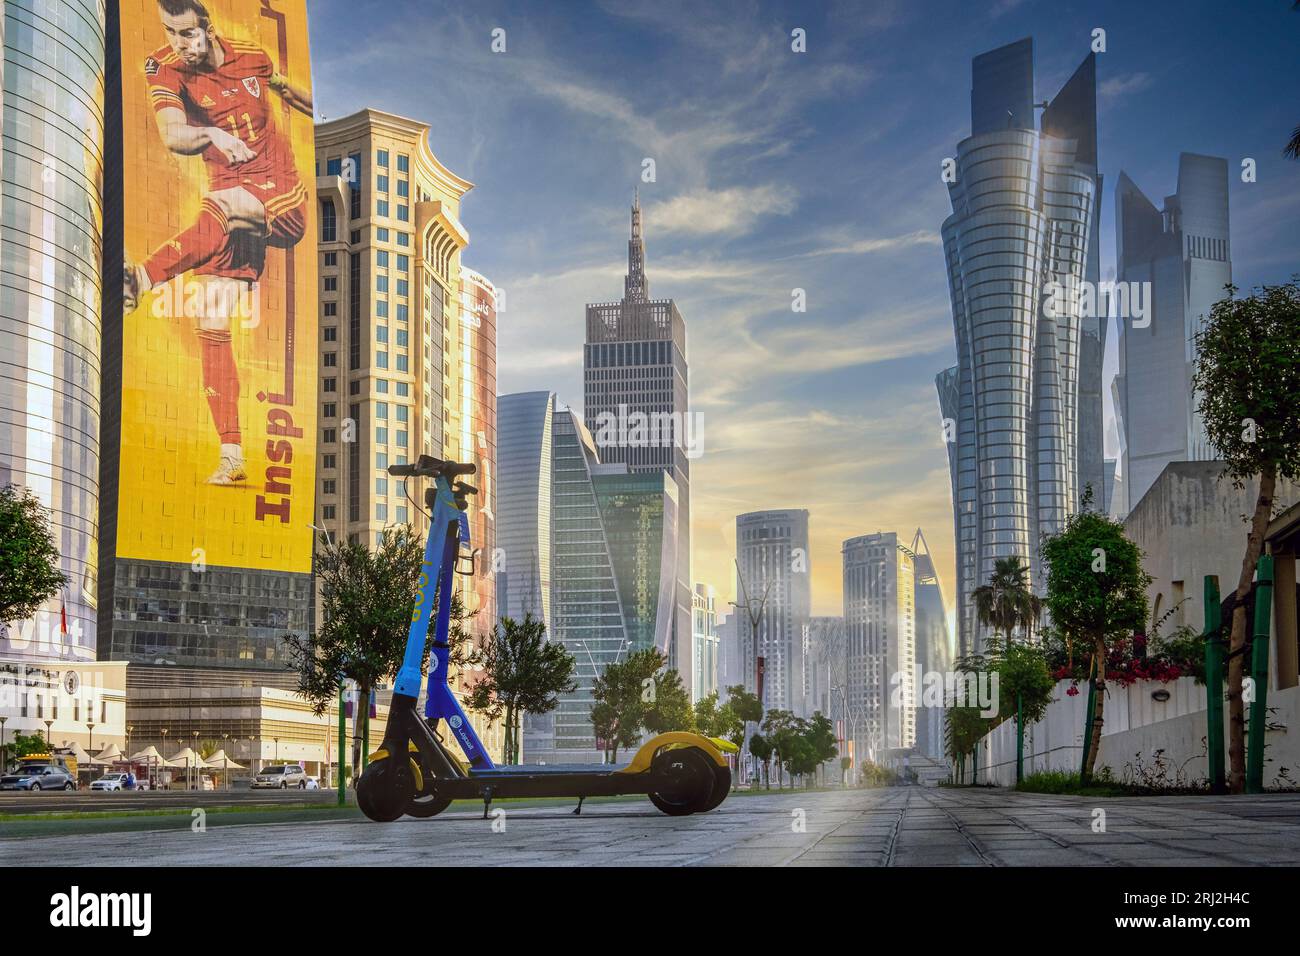 Mentre il fervore della Coppa del mondo FIFA afferra il Qatar, una splendida foto cattura la splendida strada Corniche. Immersa nelle calde tonalità di un sole che scende, la strada Foto Stock